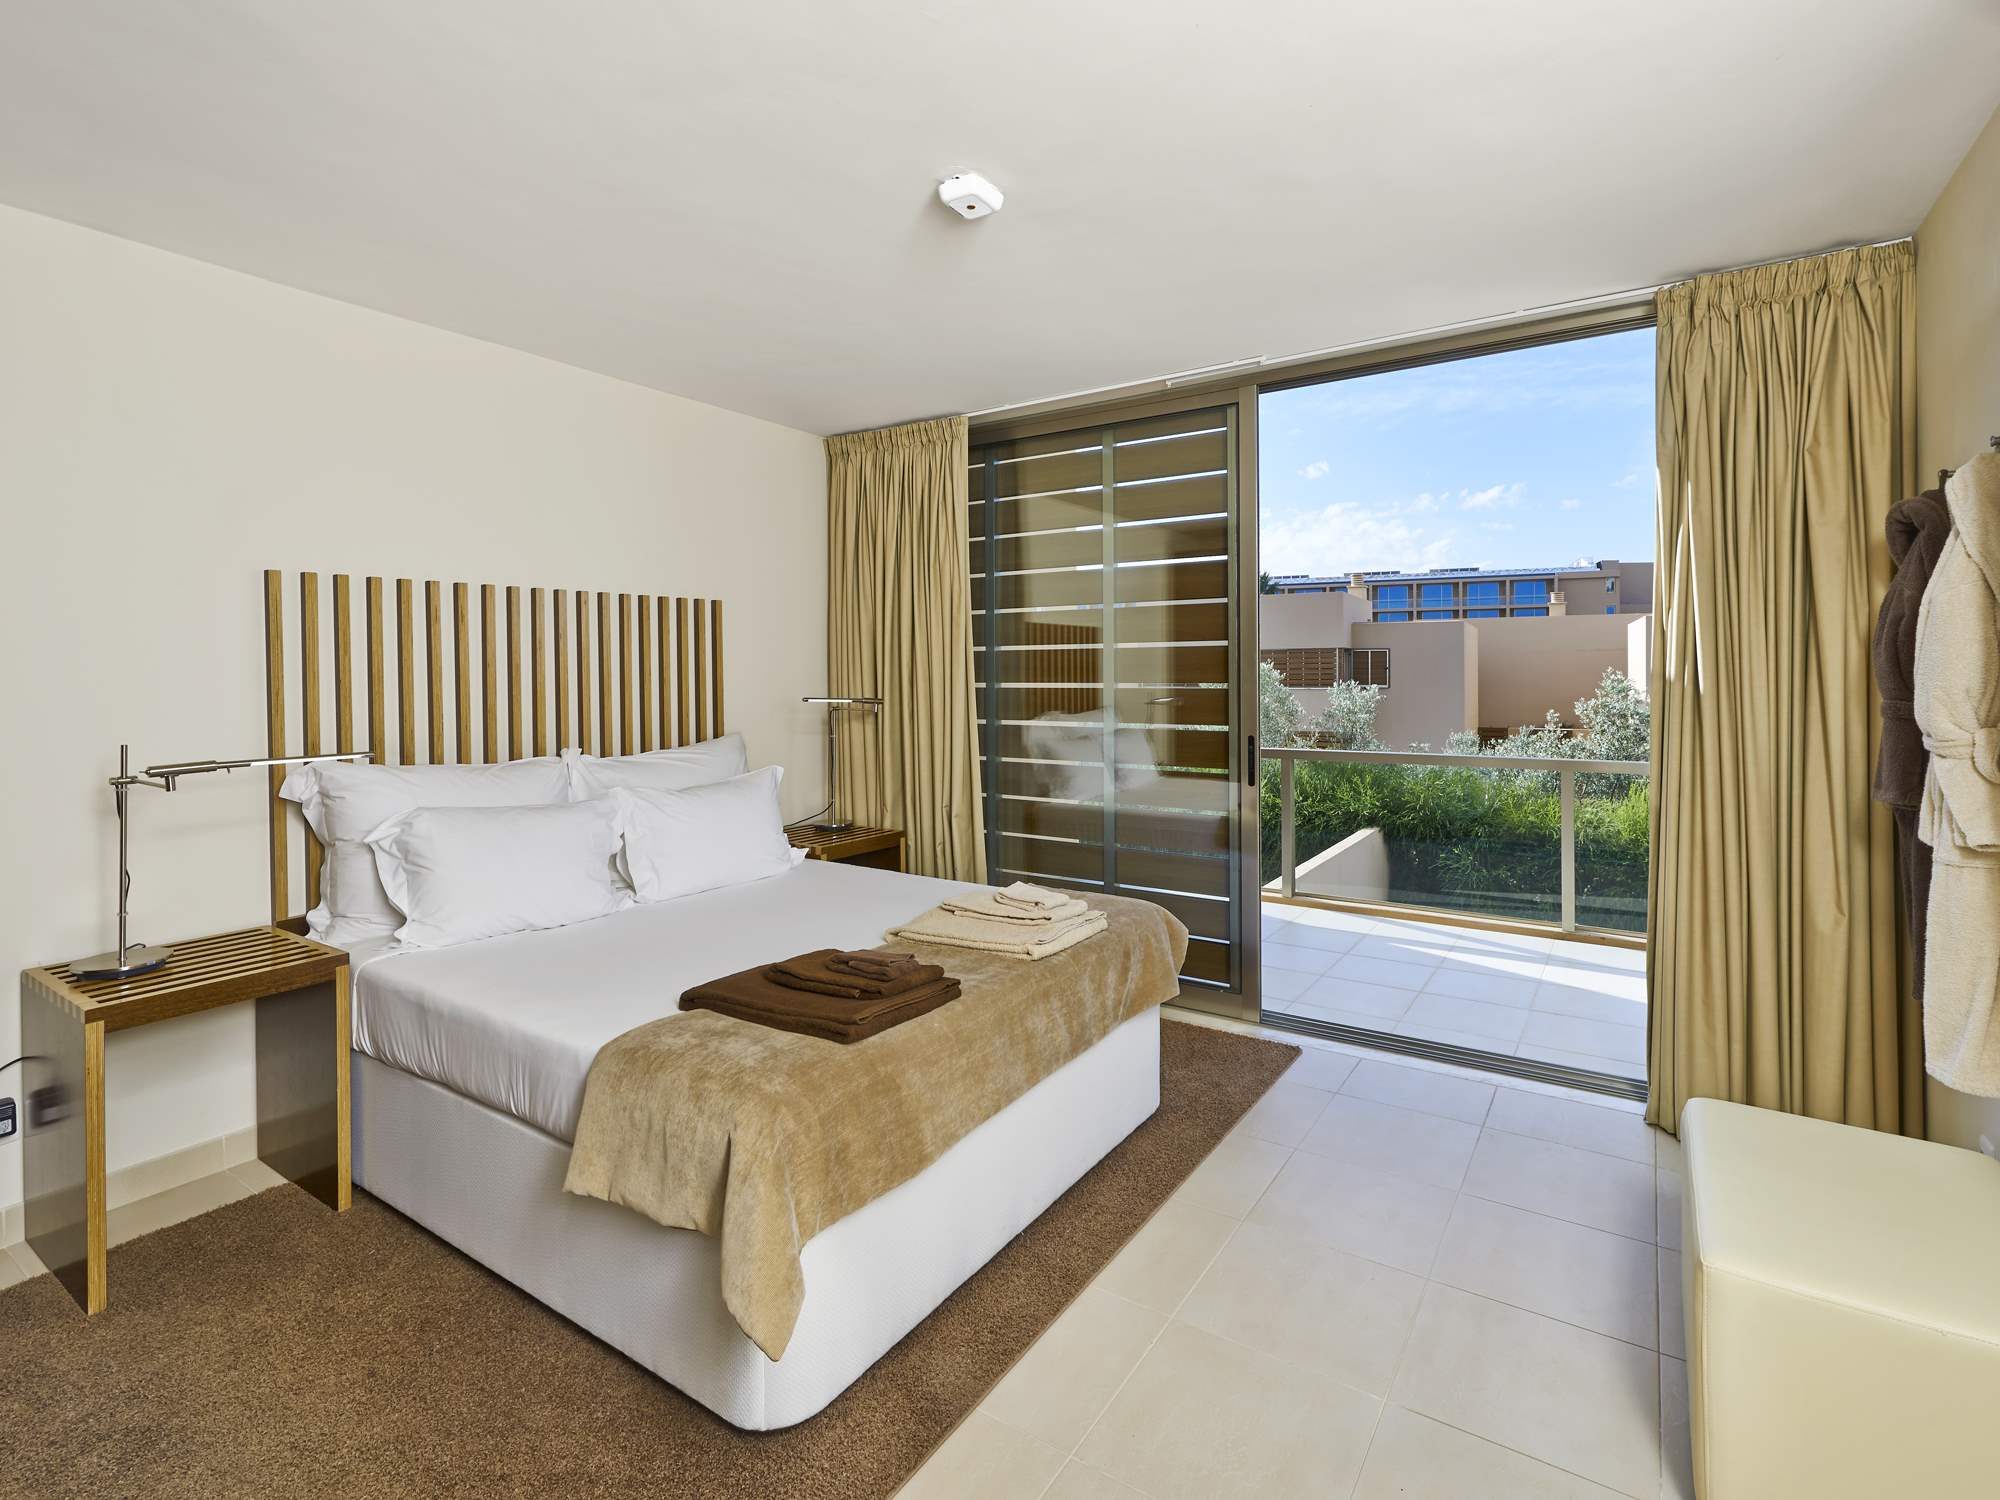 Salgados Beach Villas, 2 Bed, SC Basis, 2 bedroom villa in Vidamar Resort, Algarve Photo #8